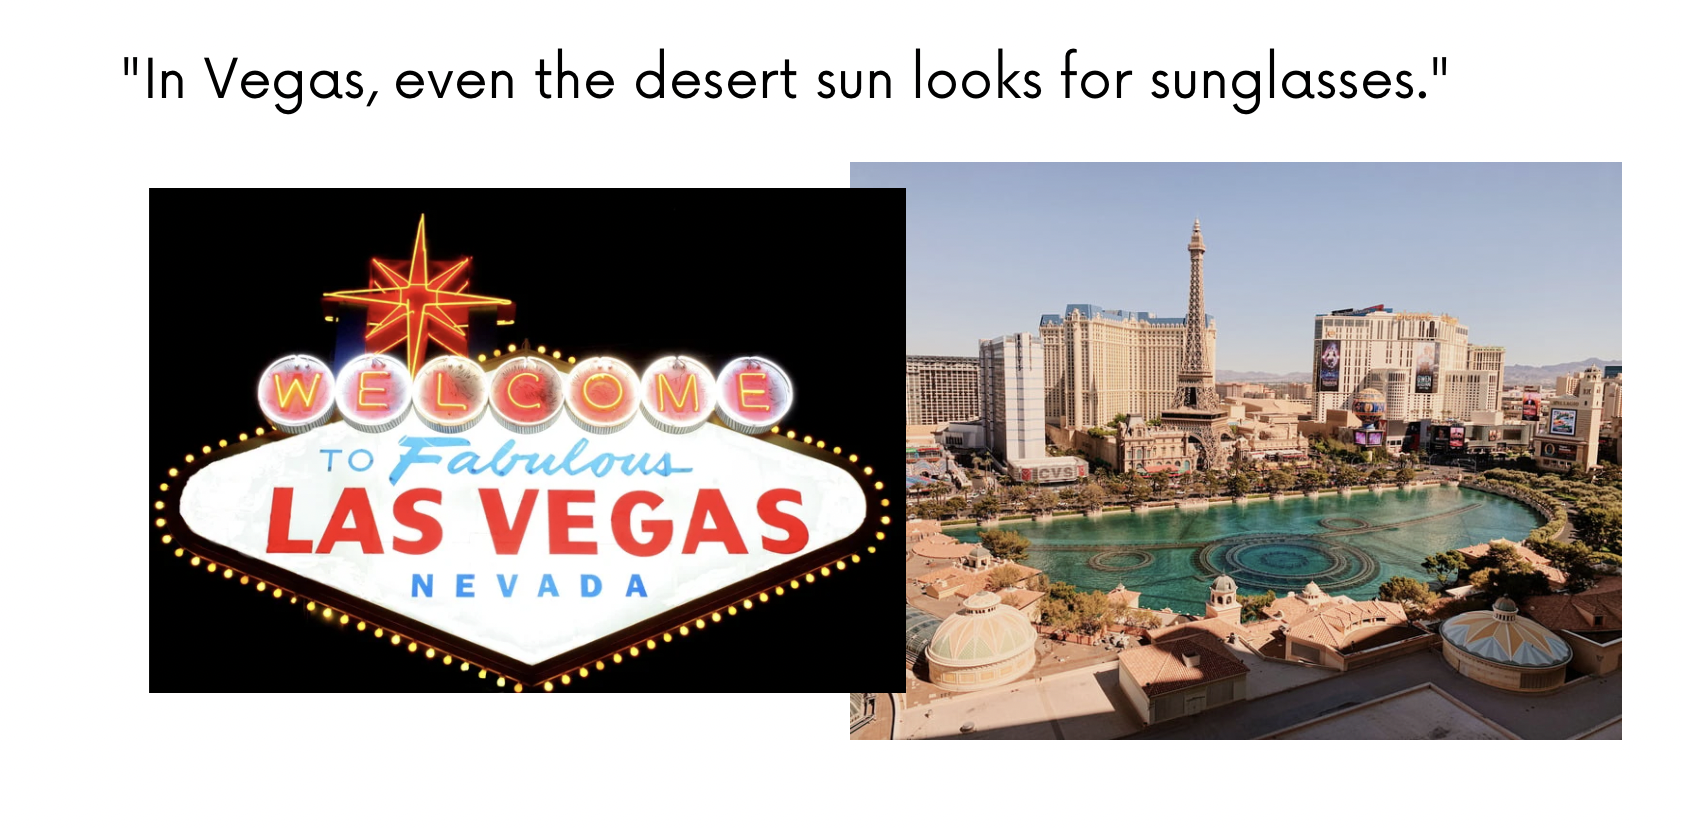 Funny Captions About Las Vegas